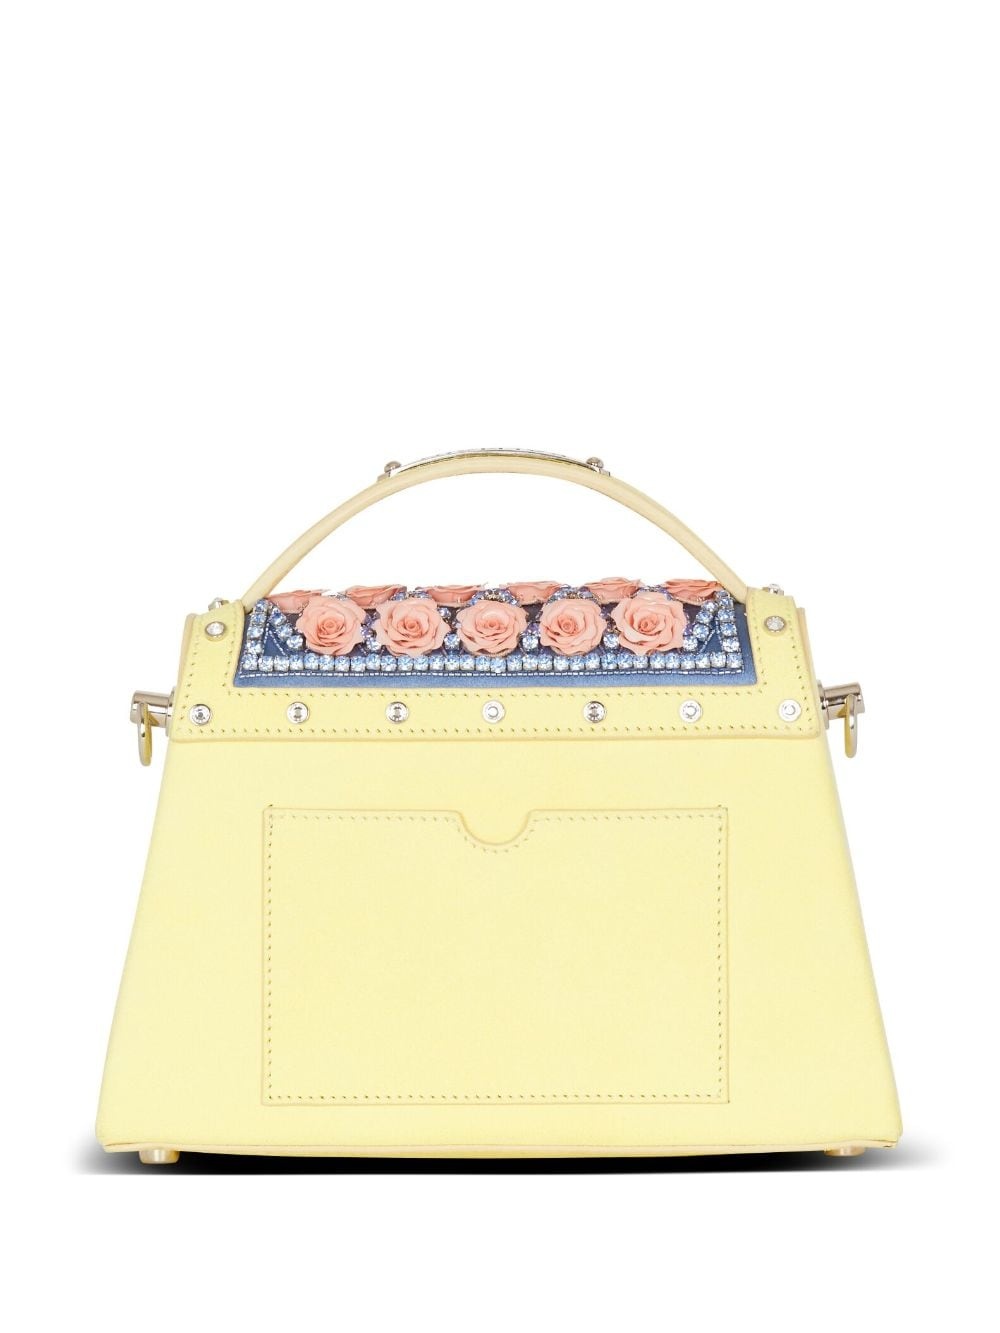 B-Buzz Dynasty embellished handbag - 4